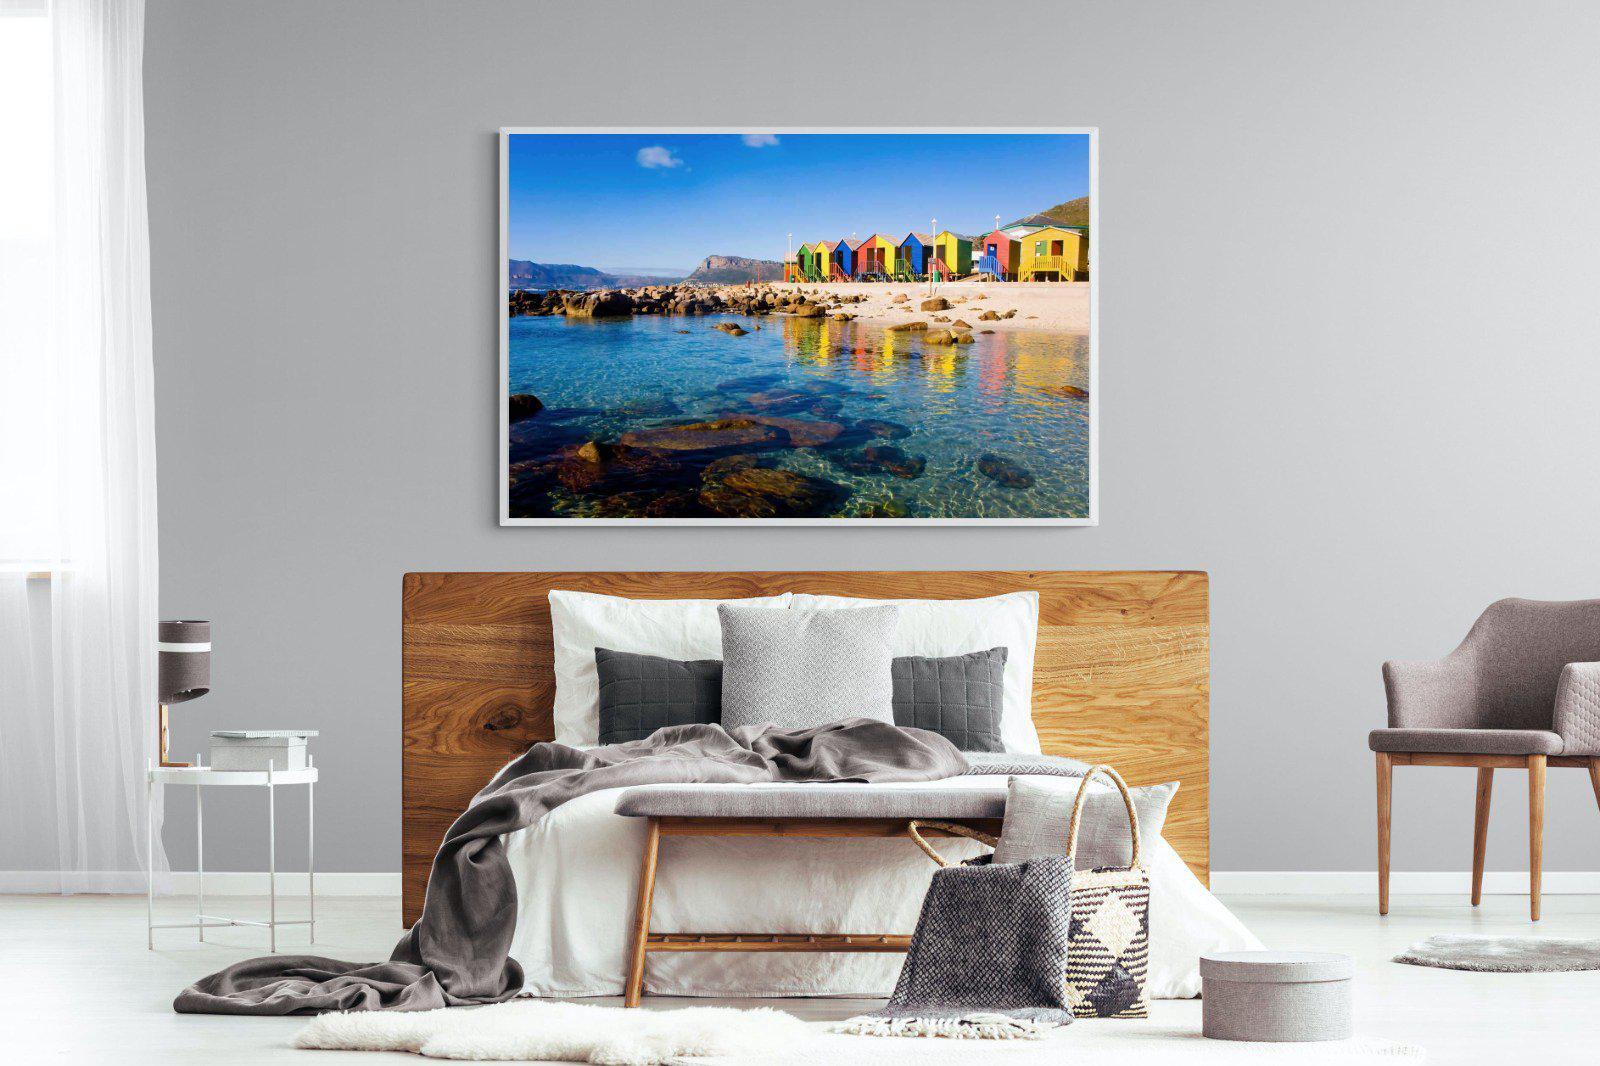 Cape Town Beach Huts-Wall_Art-150 x 100cm-Mounted Canvas-White-Pixalot